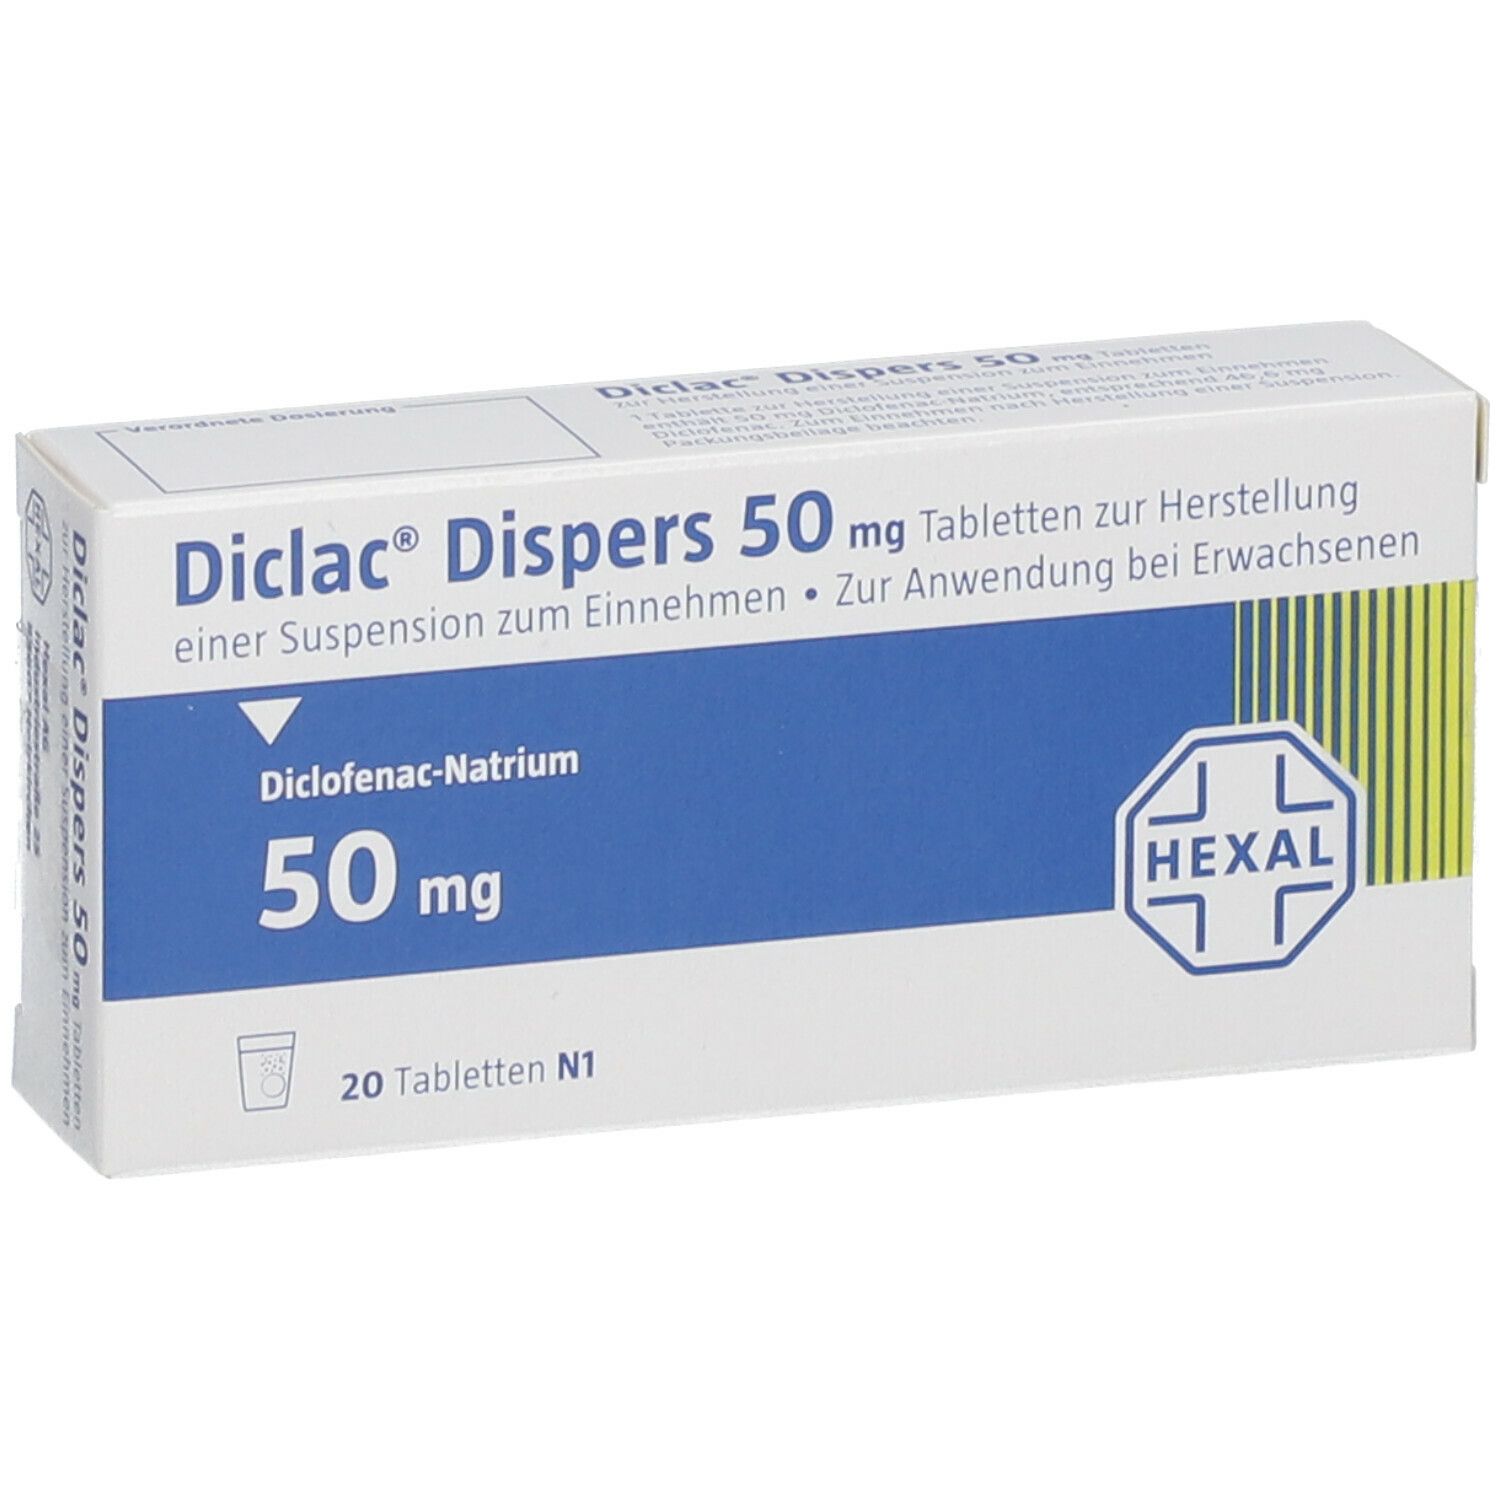 Diclac® Dispers 50 mg